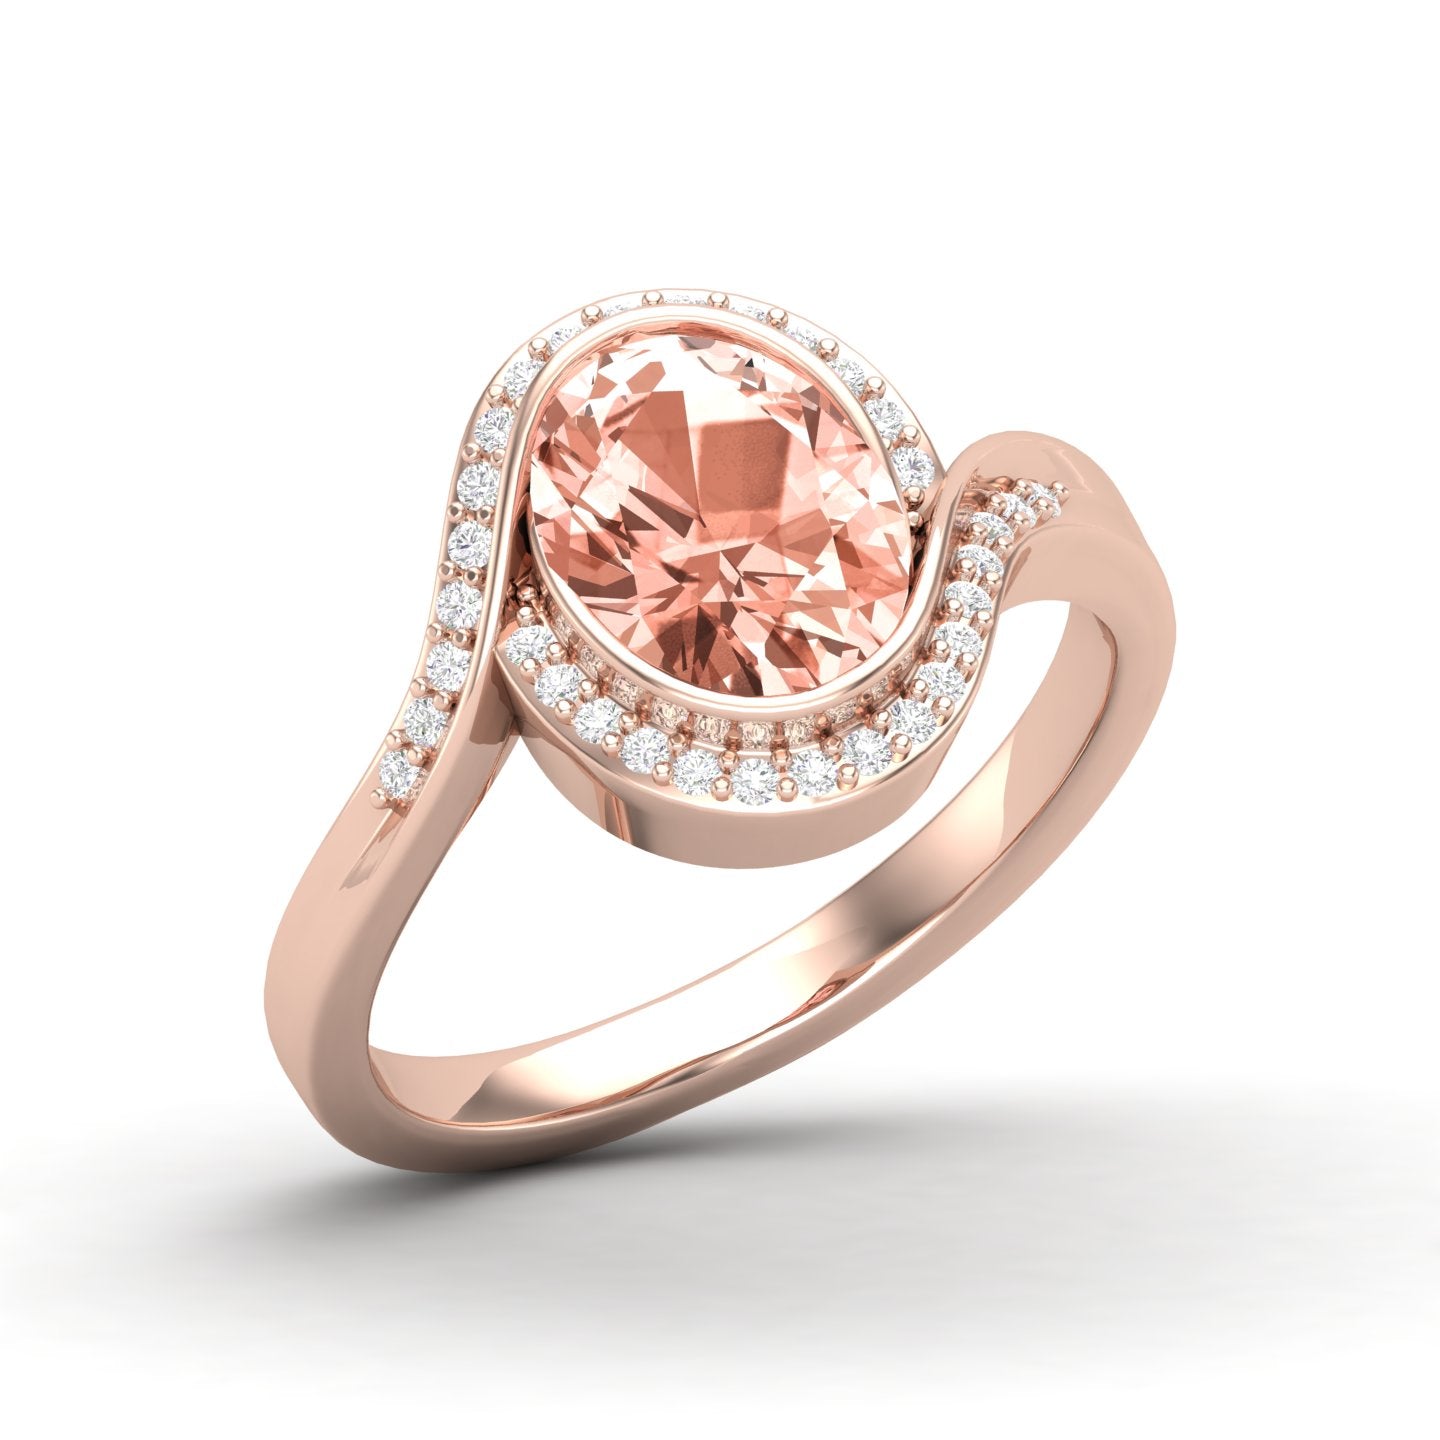 Maurya Tanzanite Harmony Engagement Ring with Diamond Halo